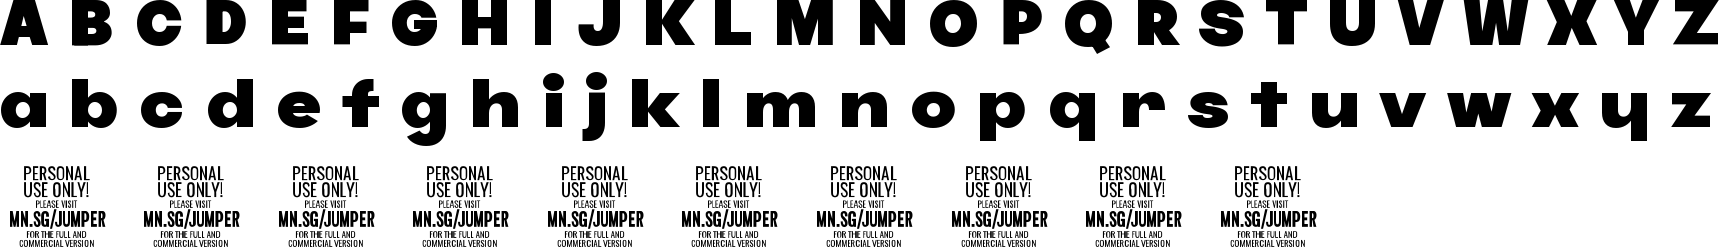 Jumper Font Character Map